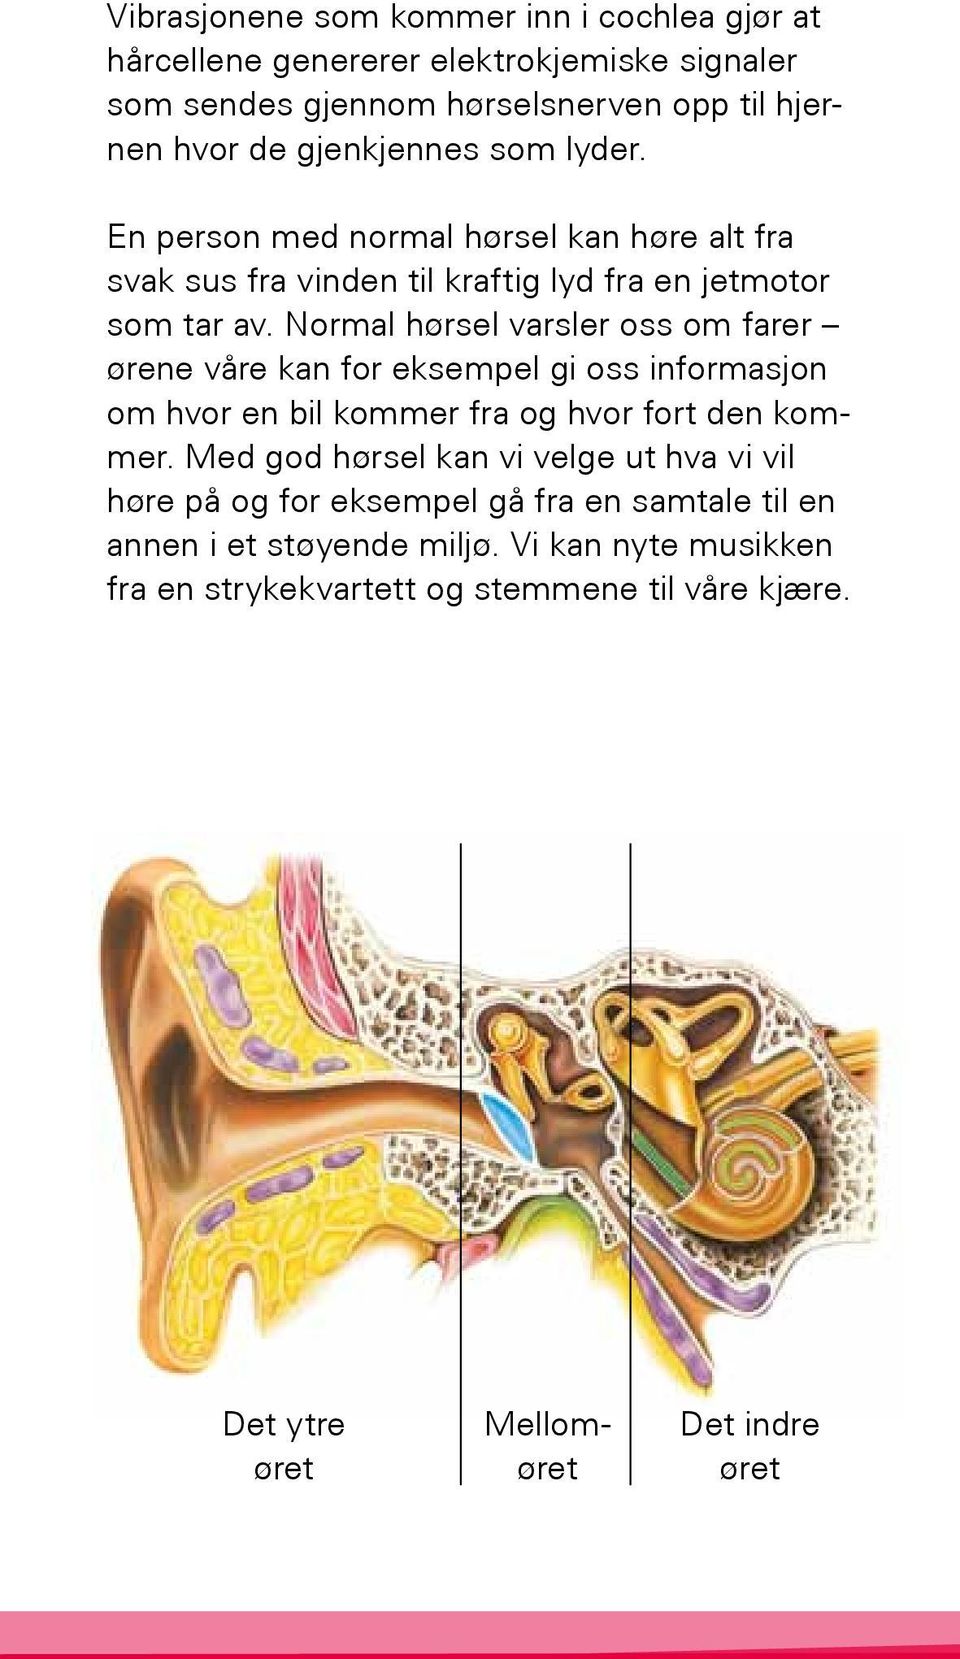 Normal hørsel varsler oss om farer ørene våre kan for eksempel gi oss informasjon om hvor en bil kommer fra og hvor fort den kommer.